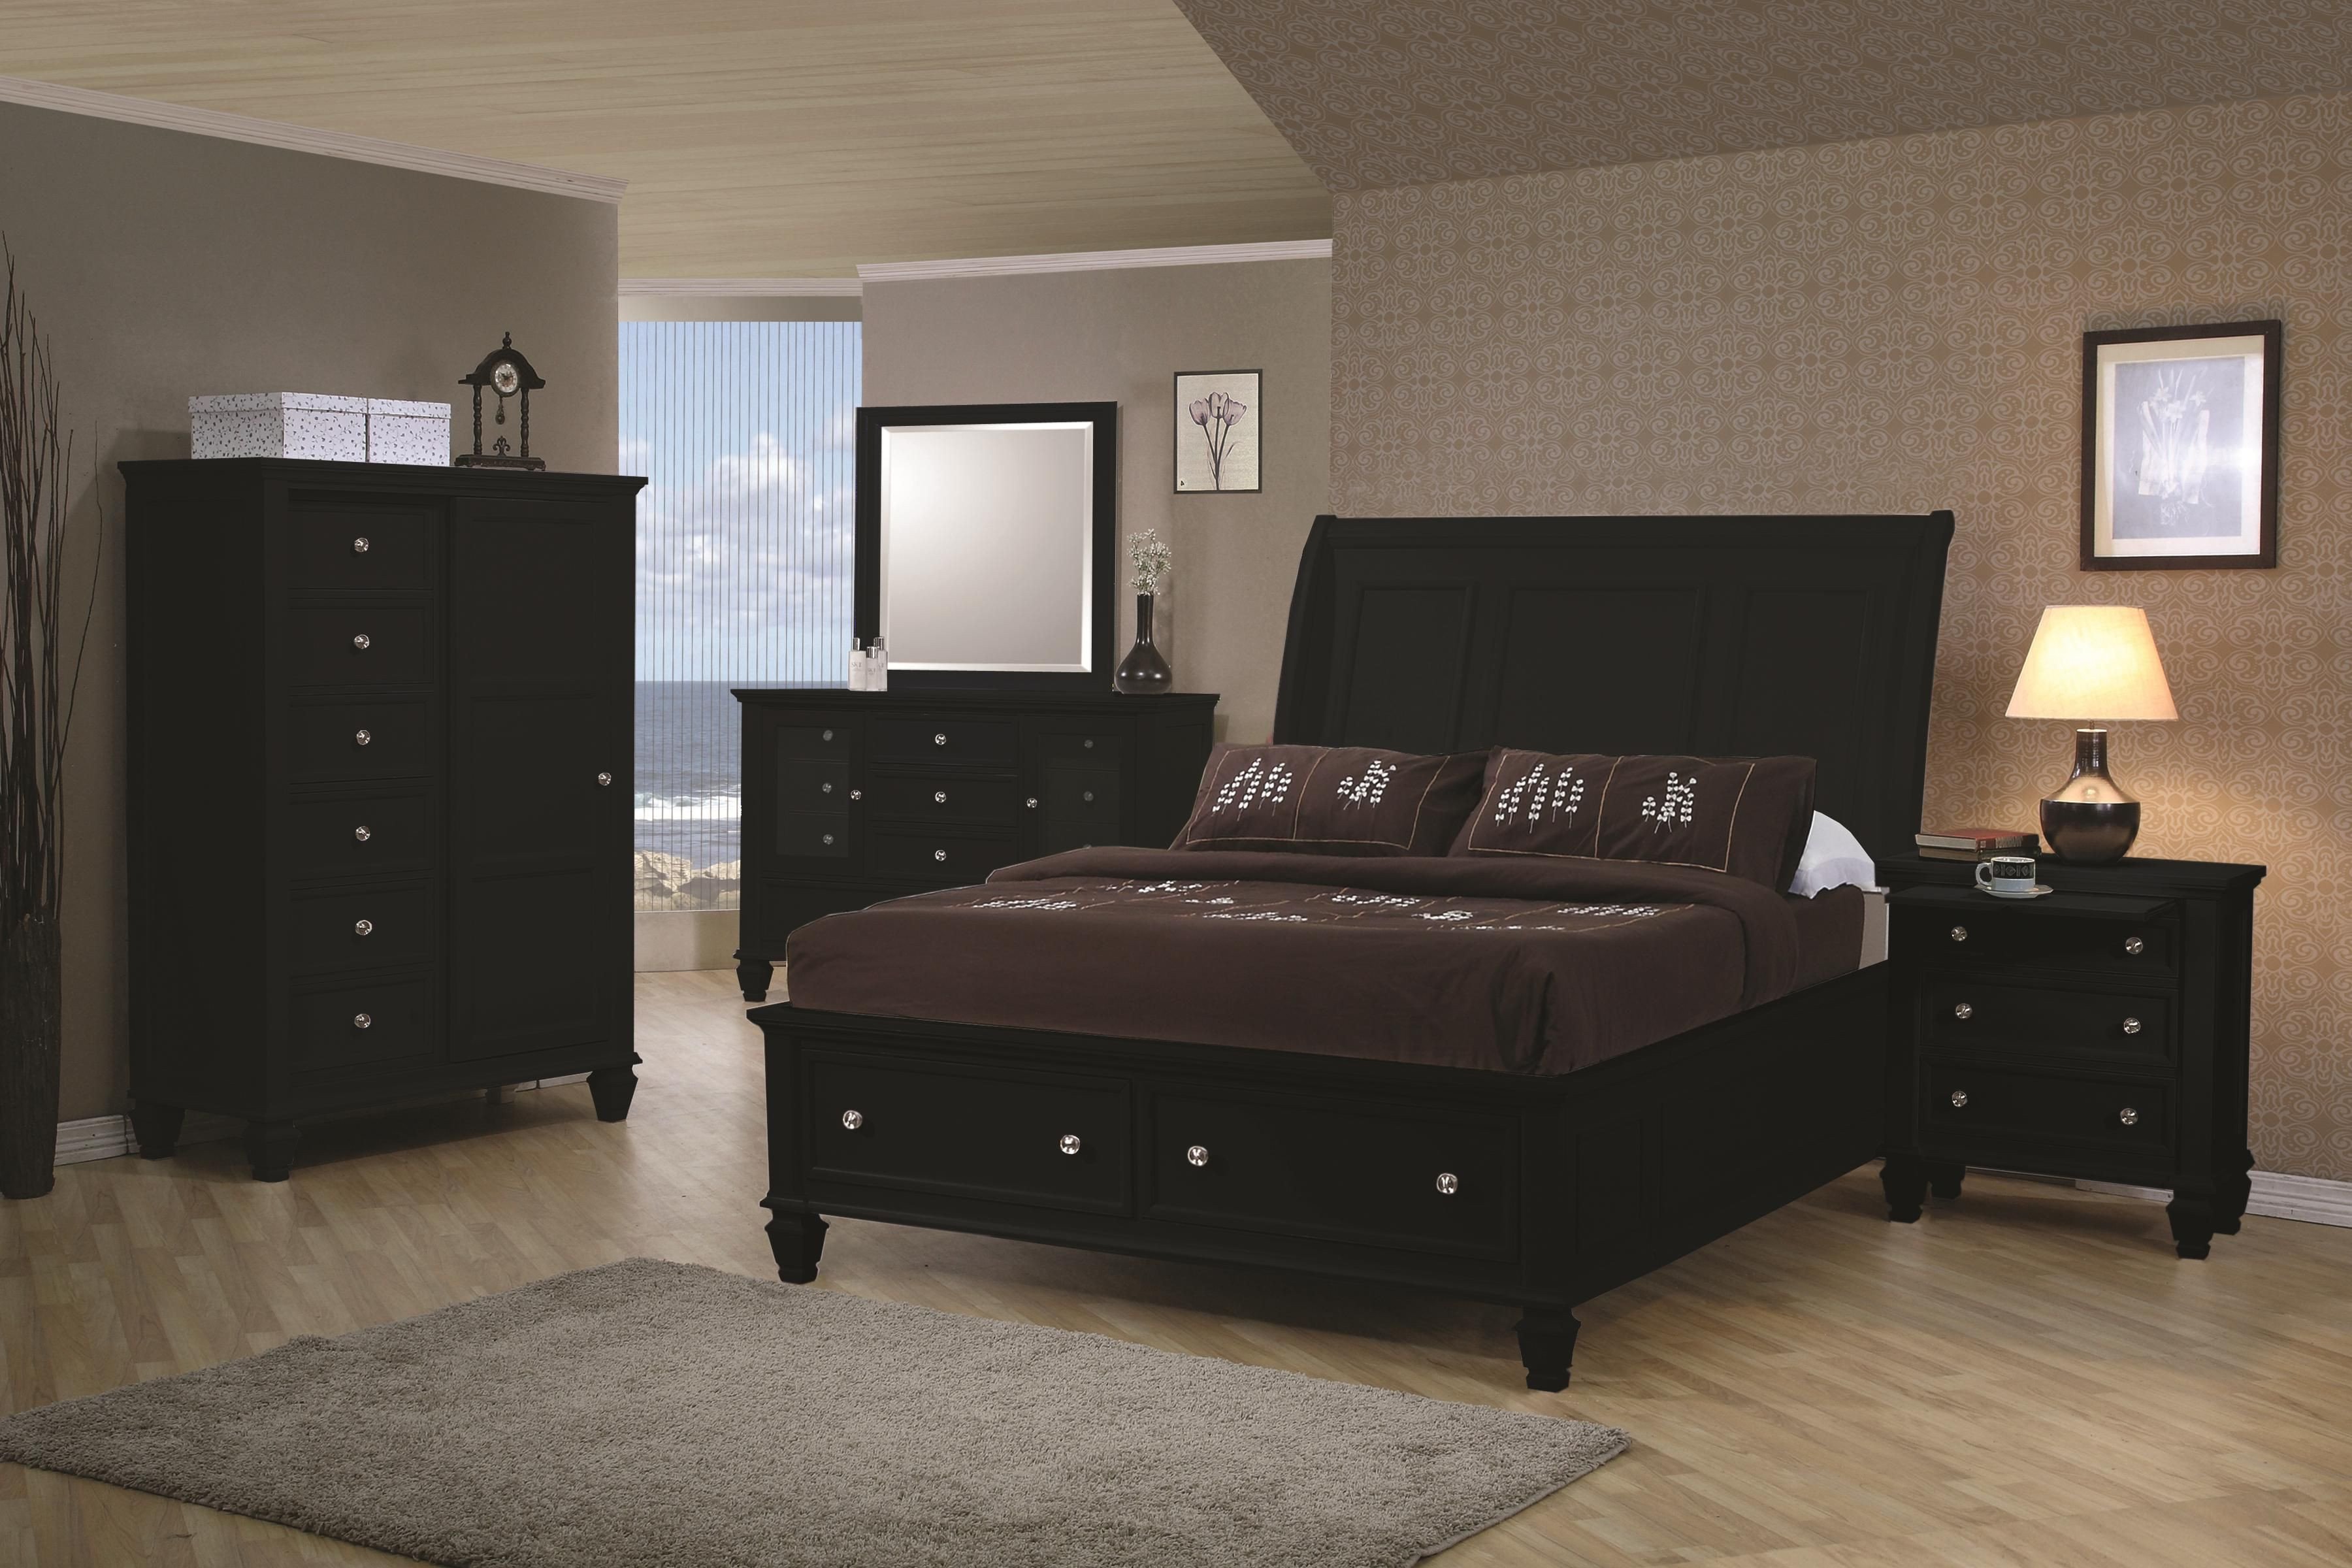 used solid wood bedroom black furnituresburg va area